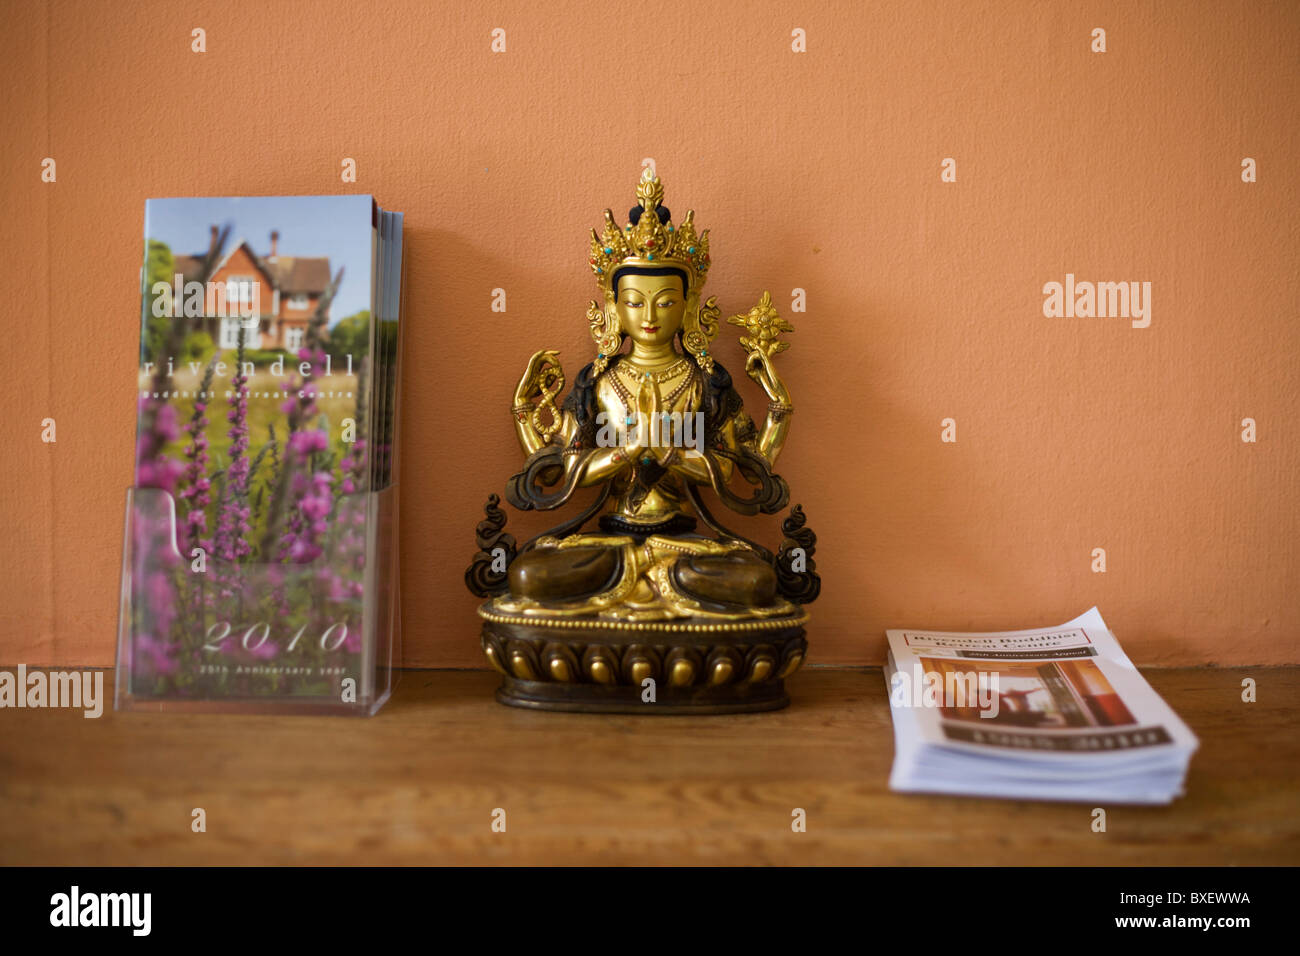 L'icône de Bouddha et des brochures sur la corniche au centre de retraite bouddhiste Rivendell, East Sussex, Angleterre. Banque D'Images